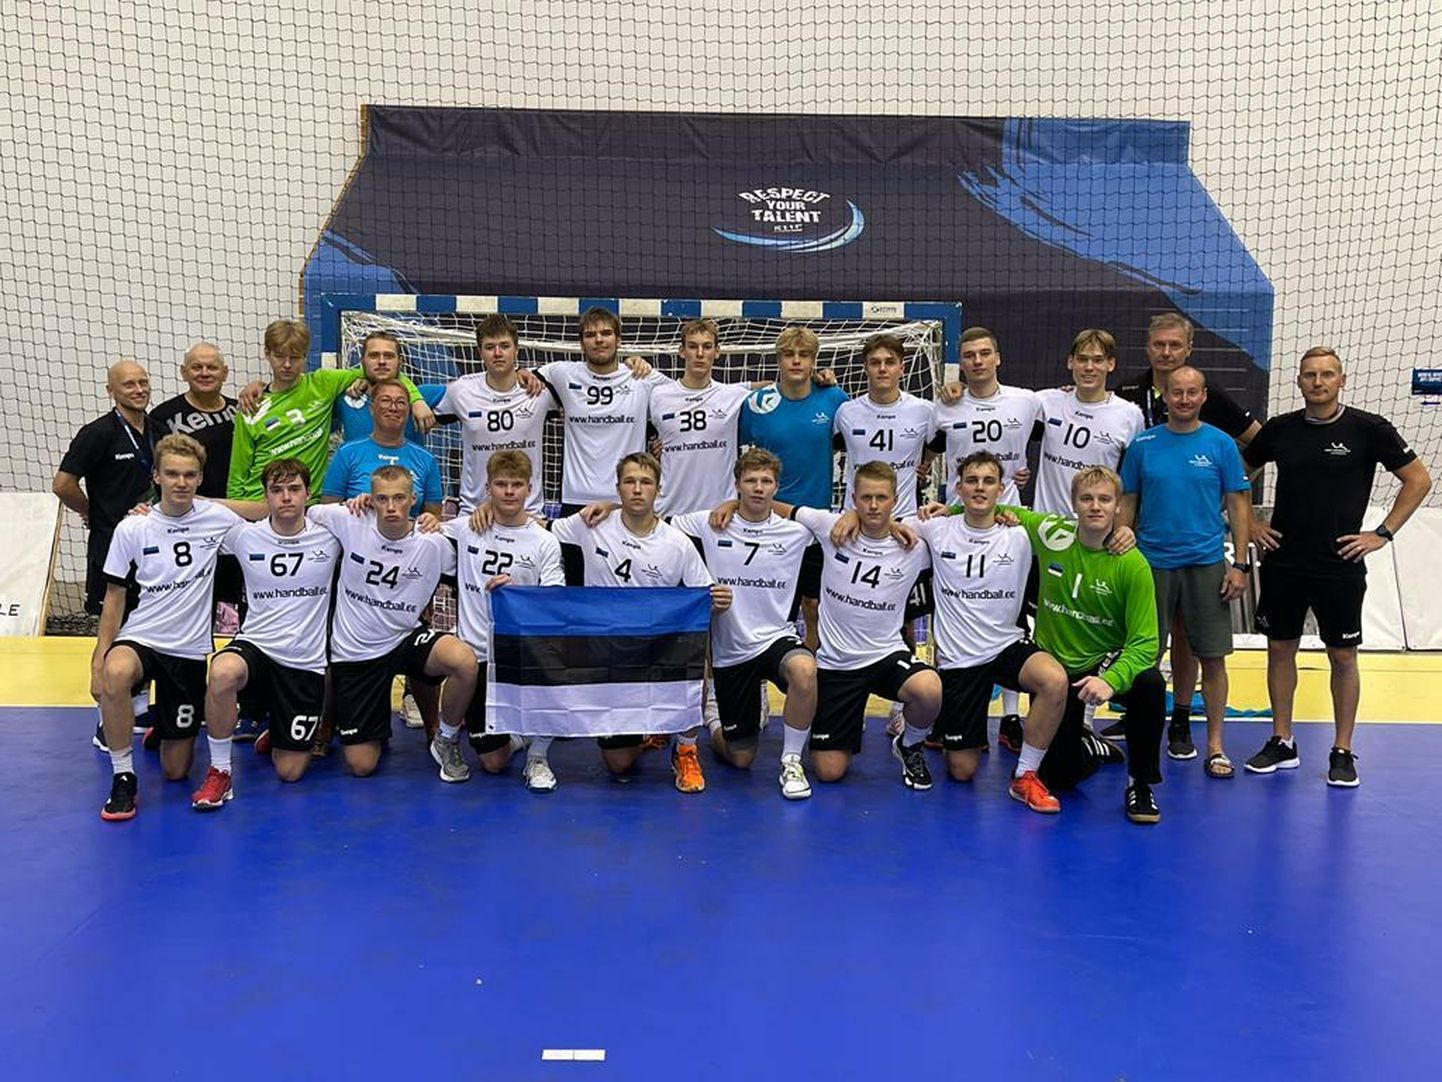 Eesti noorte käsipallikoondis naaseb Rumeeniast Euroopa meistrivõistlustelt kuuenda kohaga.